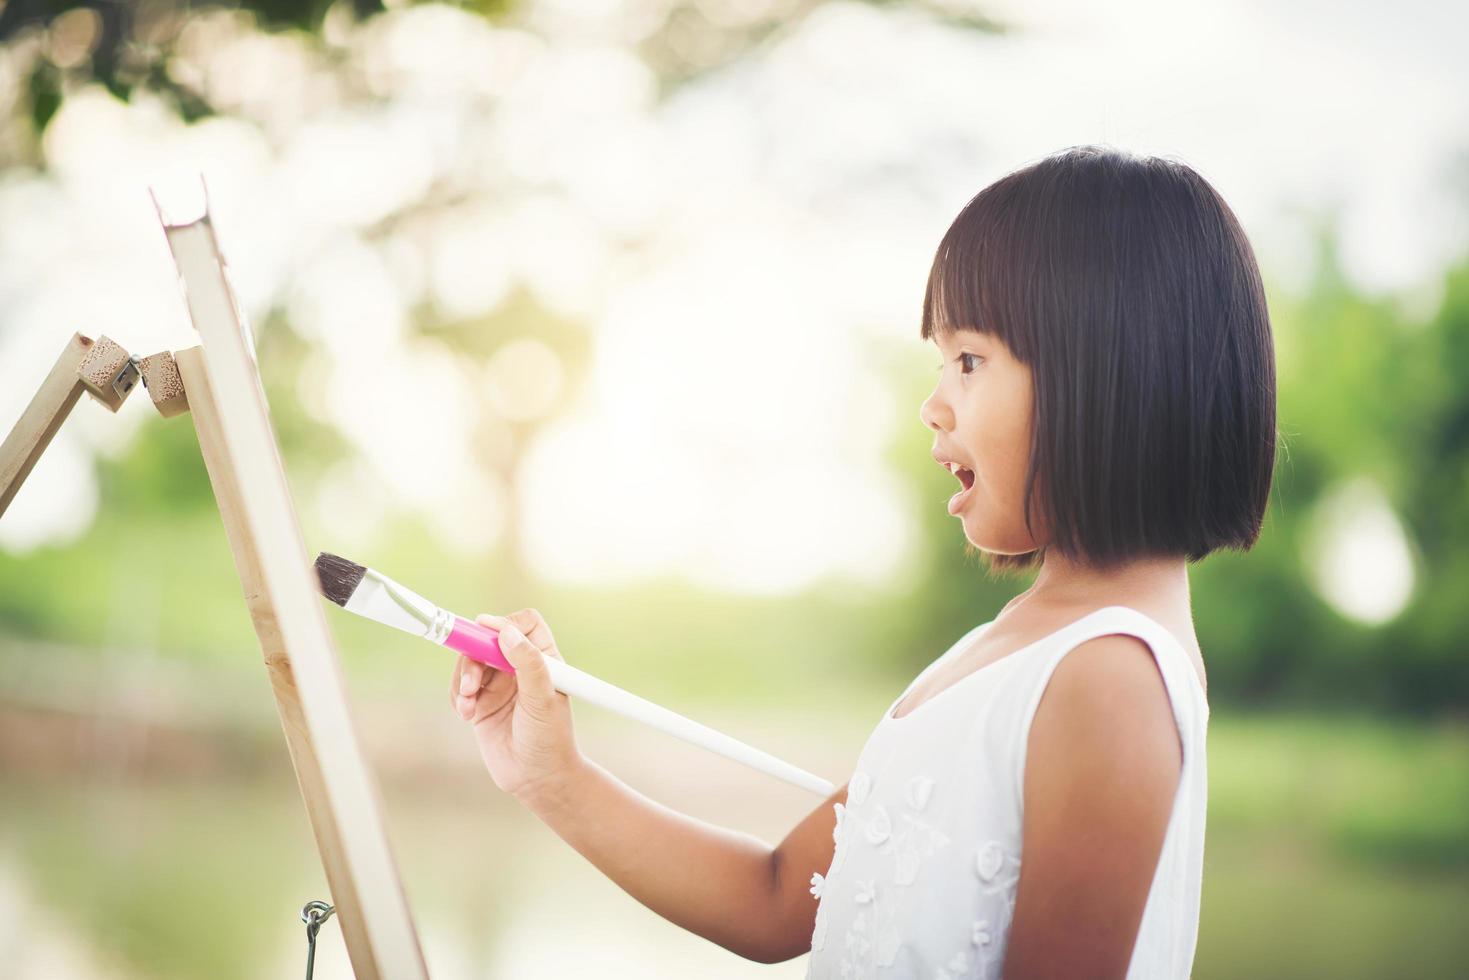 menina artista pintando um quadro no parque foto